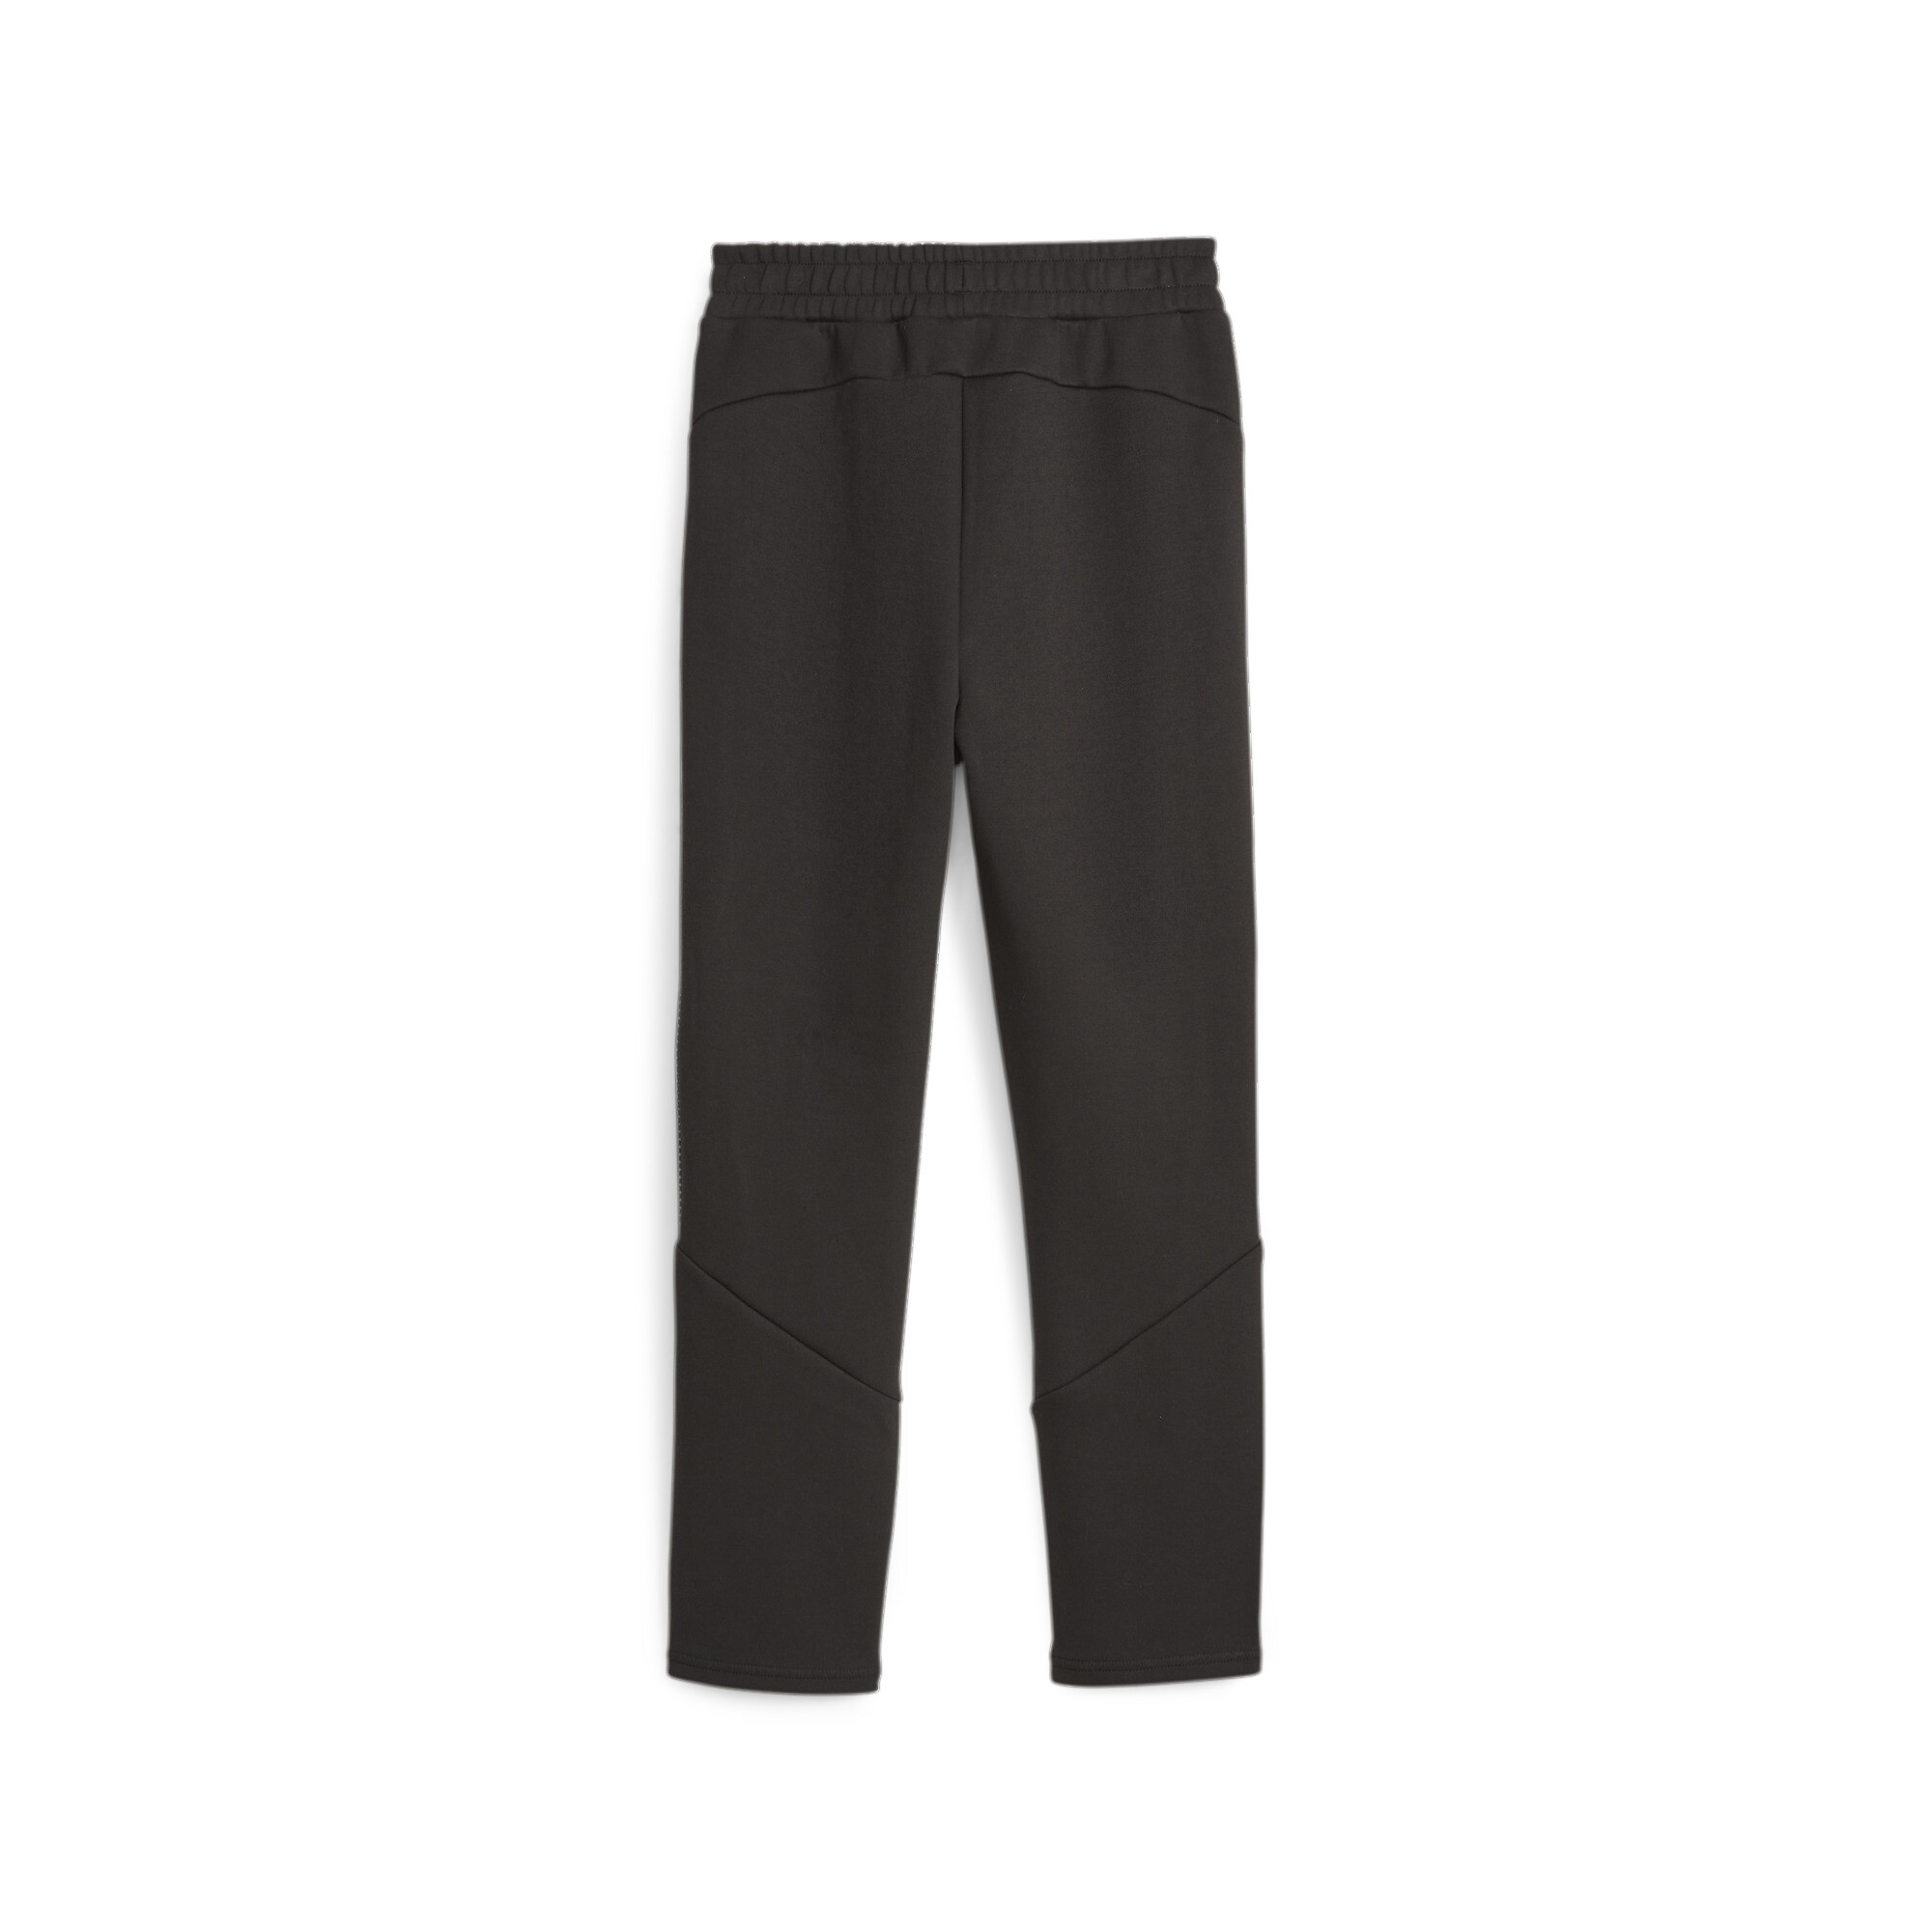 PUMA Evostripe Sweatpants In Black, Size 7-8 Youth